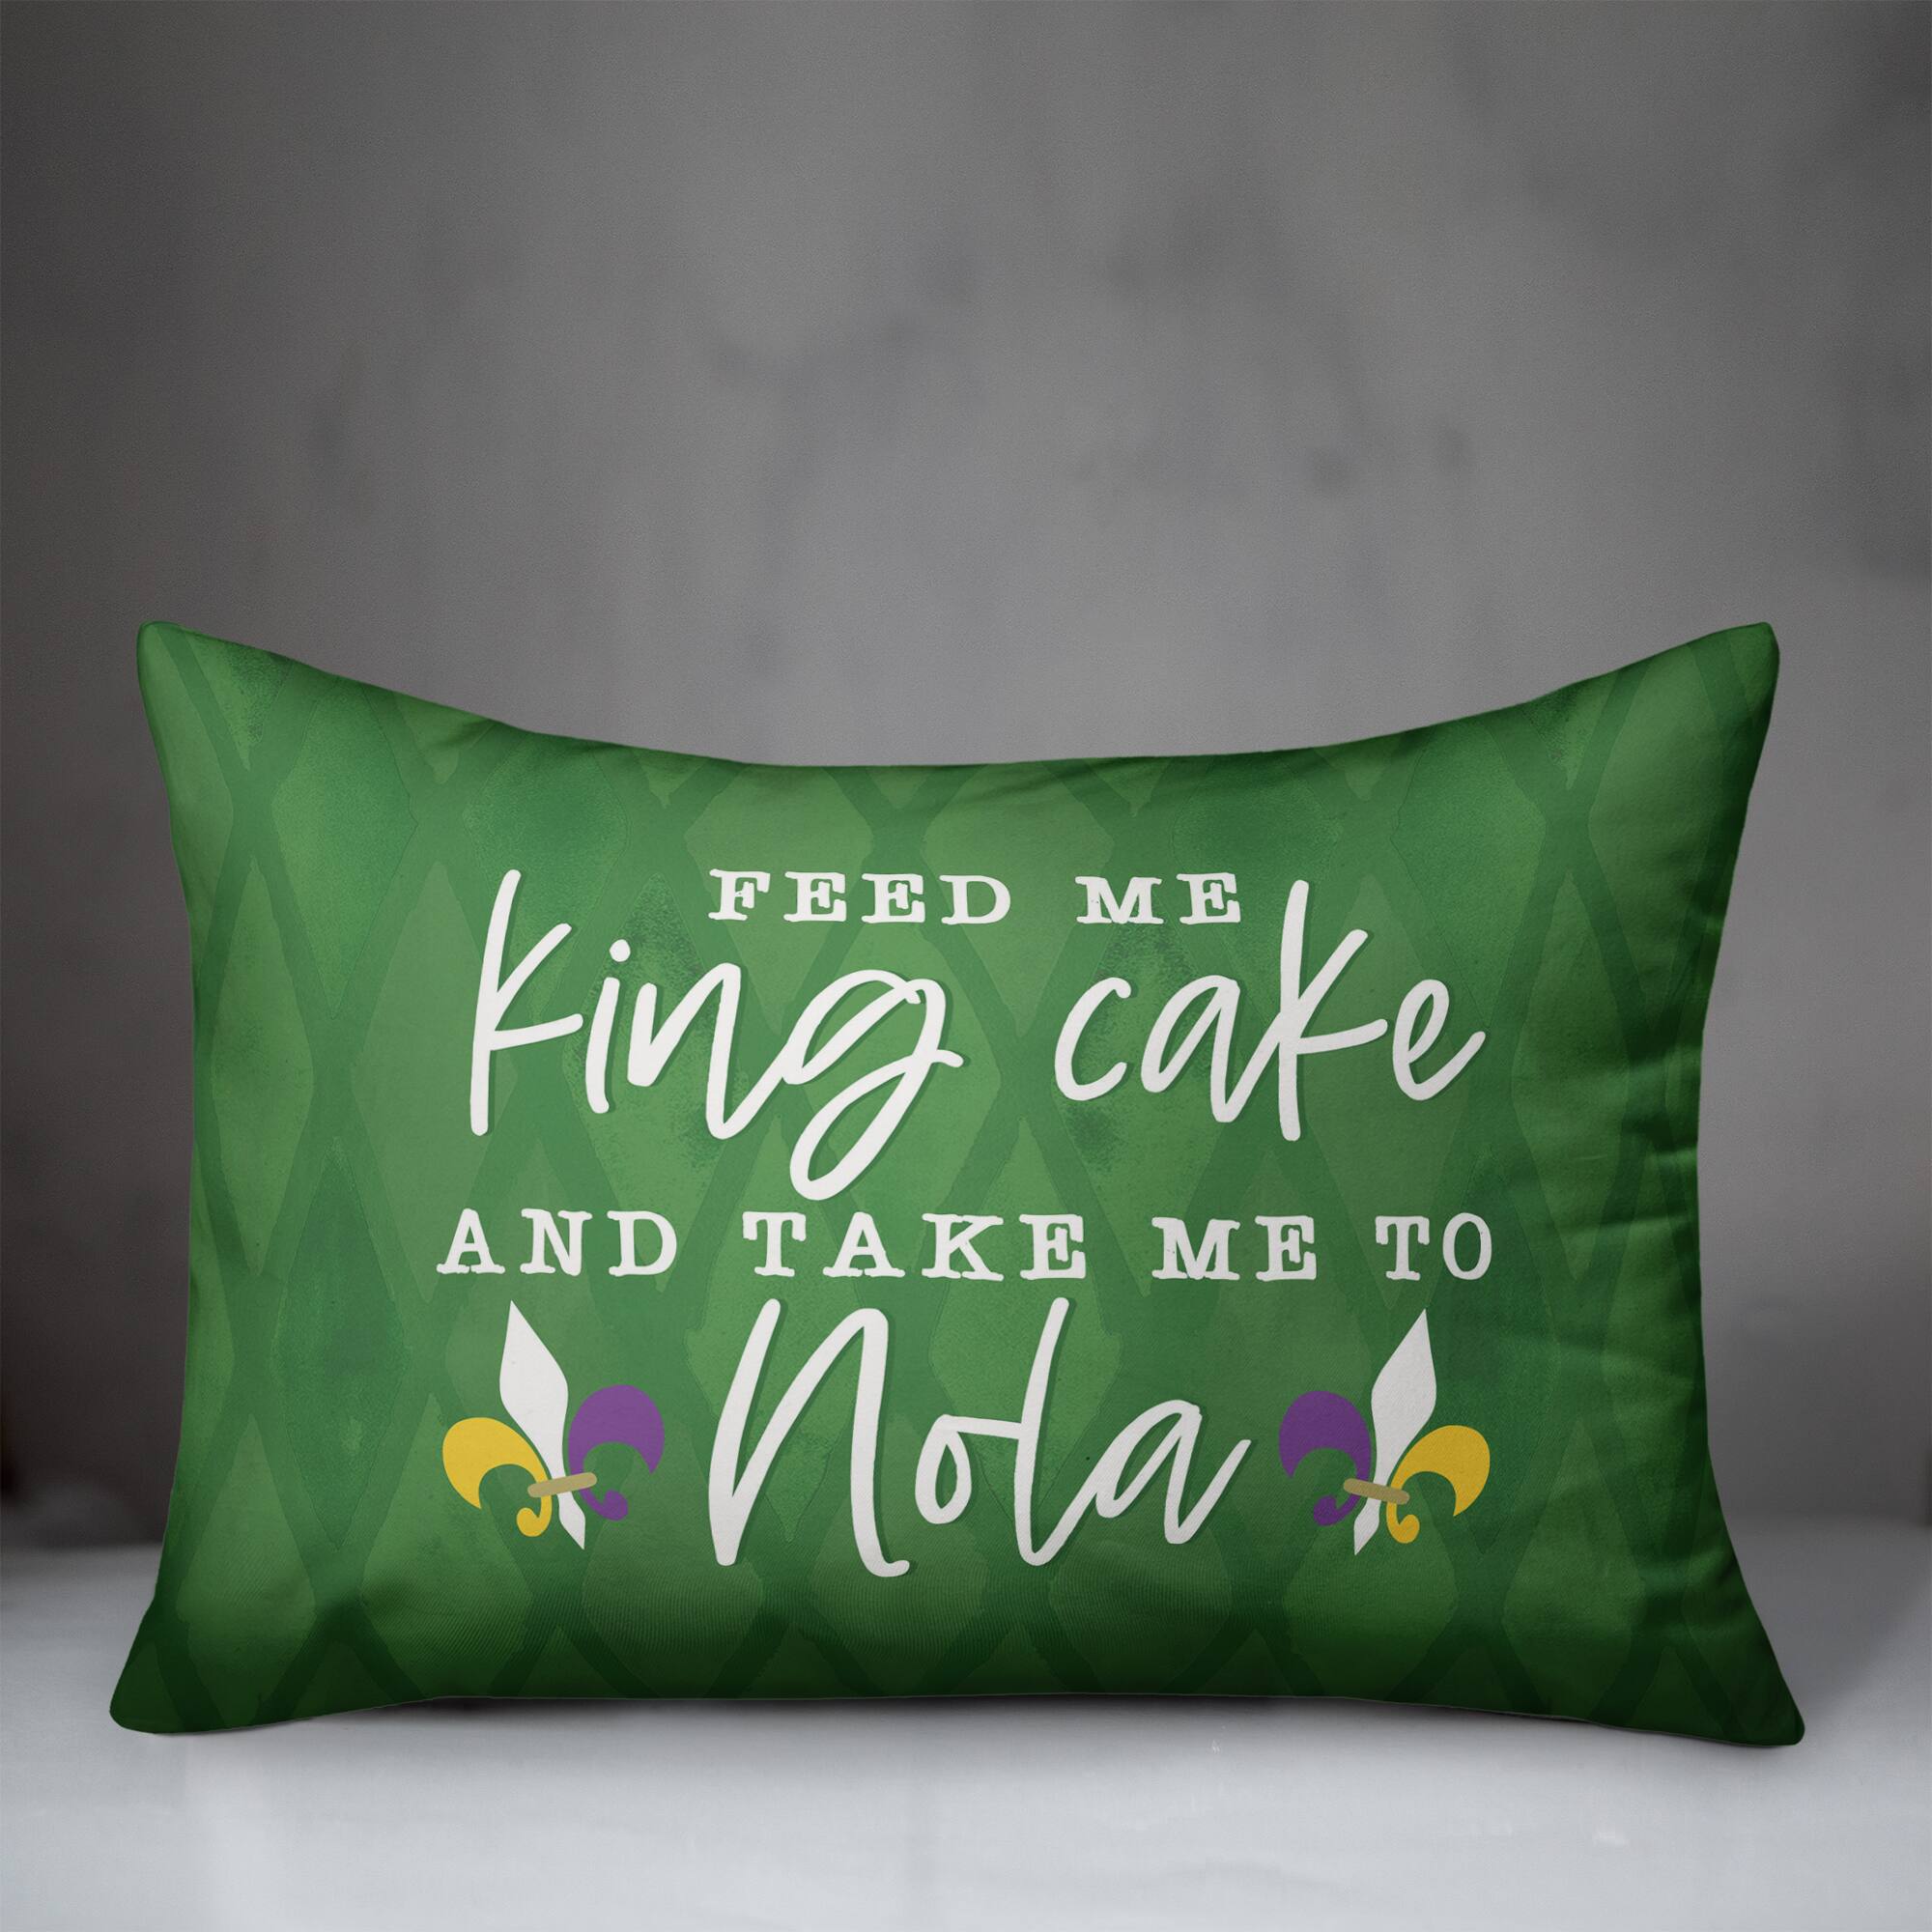 Feed Me King Cake Mardi Gras Throw Pillow